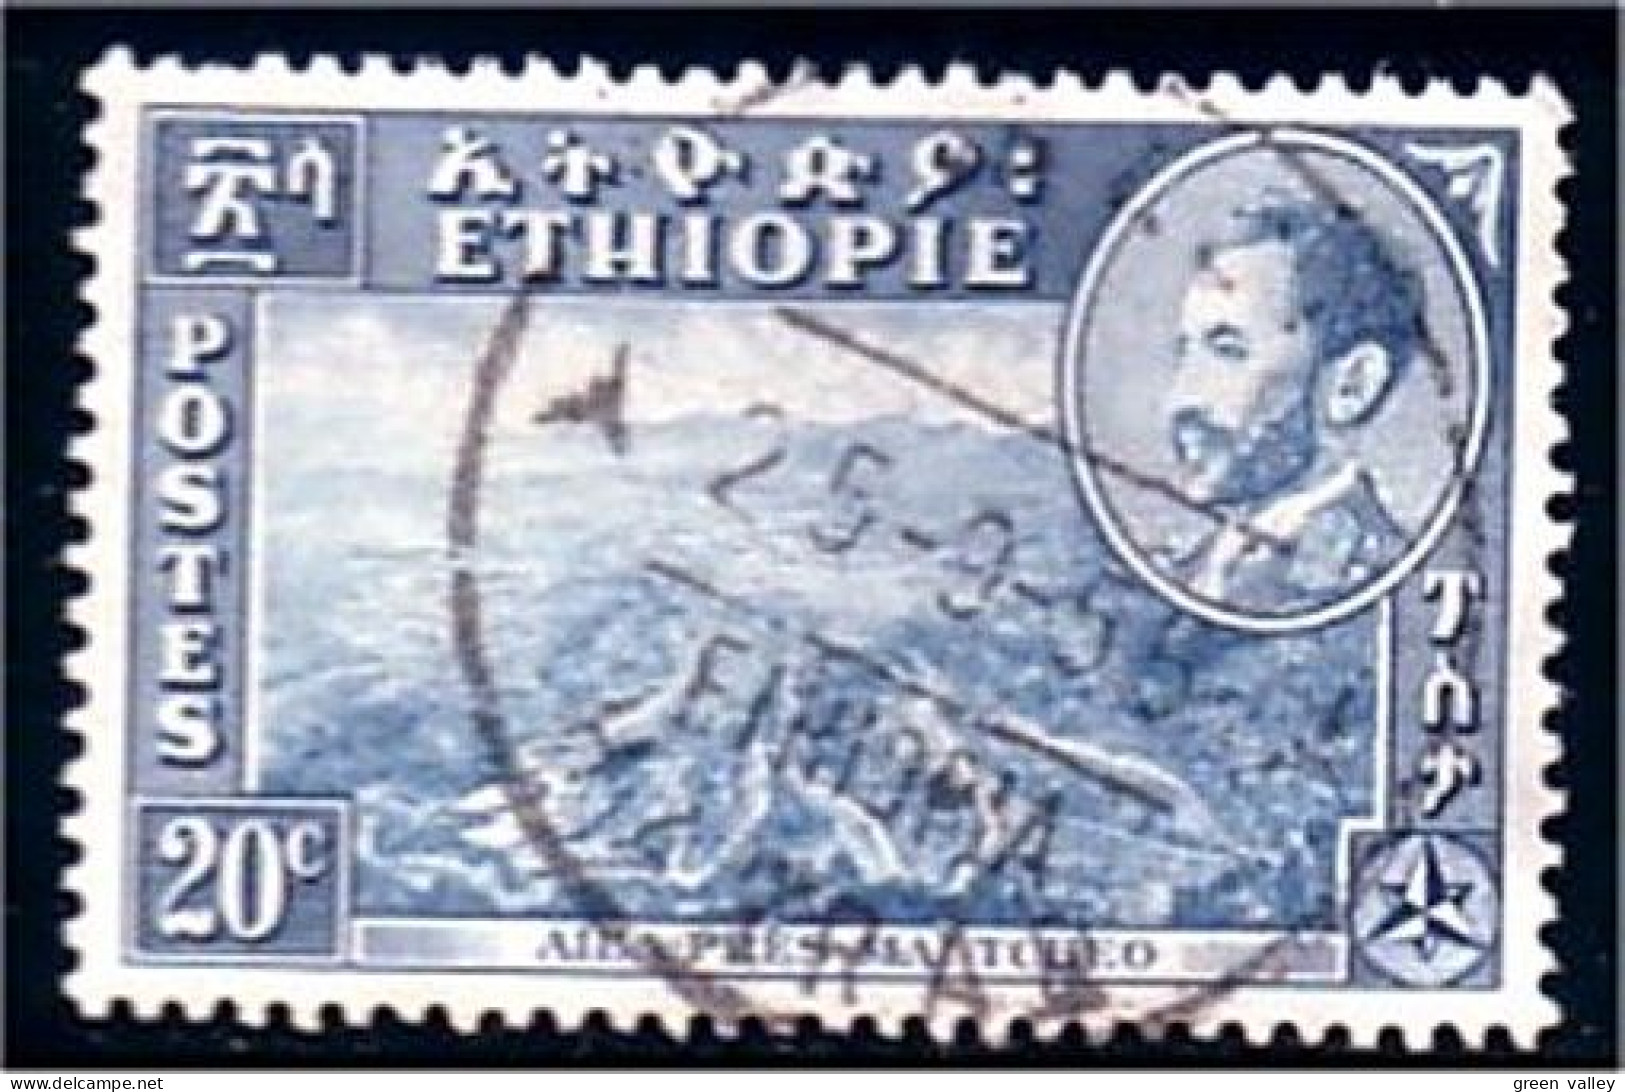 324 Ethiopie (ETH-108) - Ethiopie